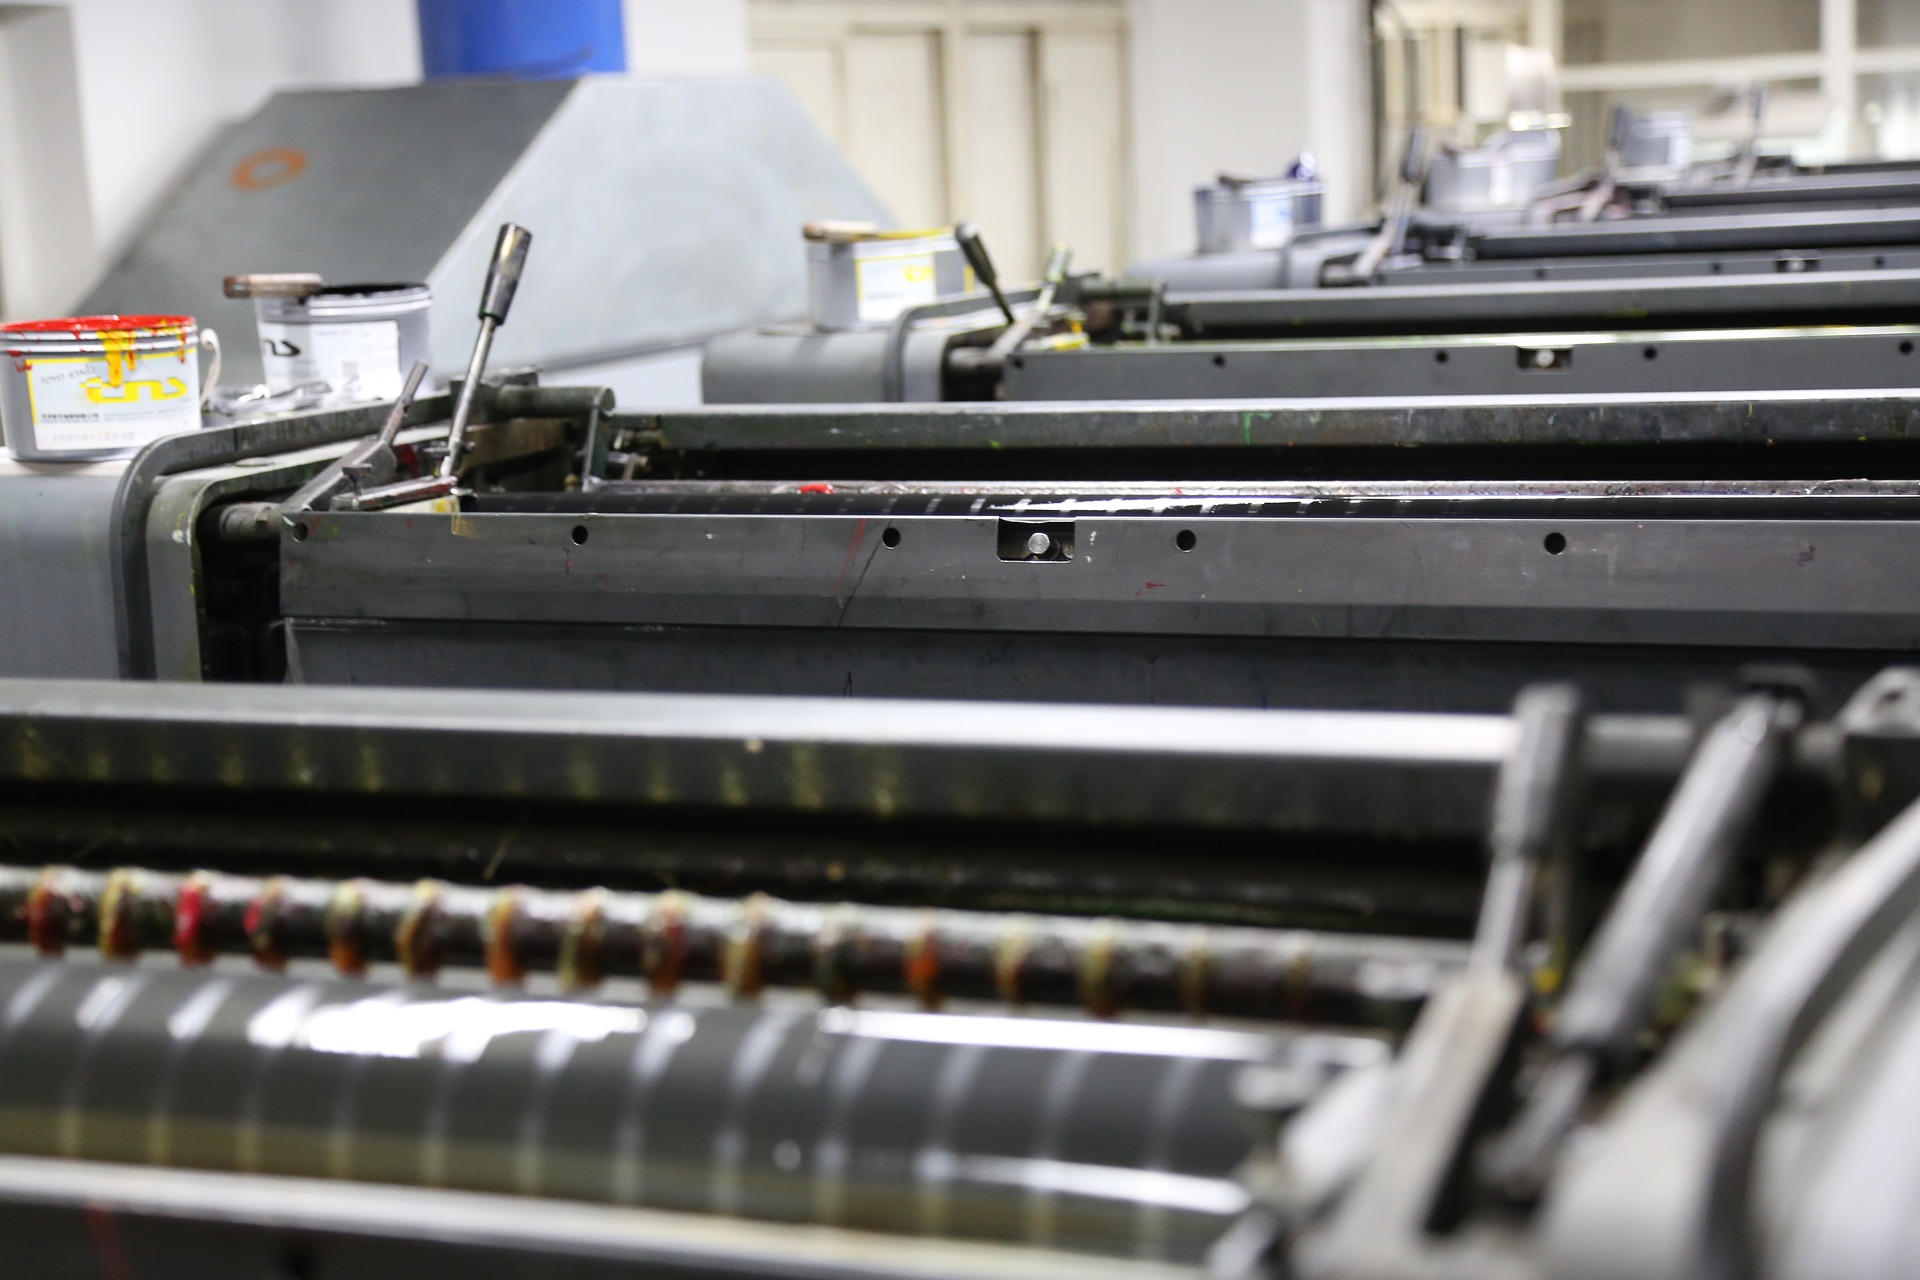 Printing machines